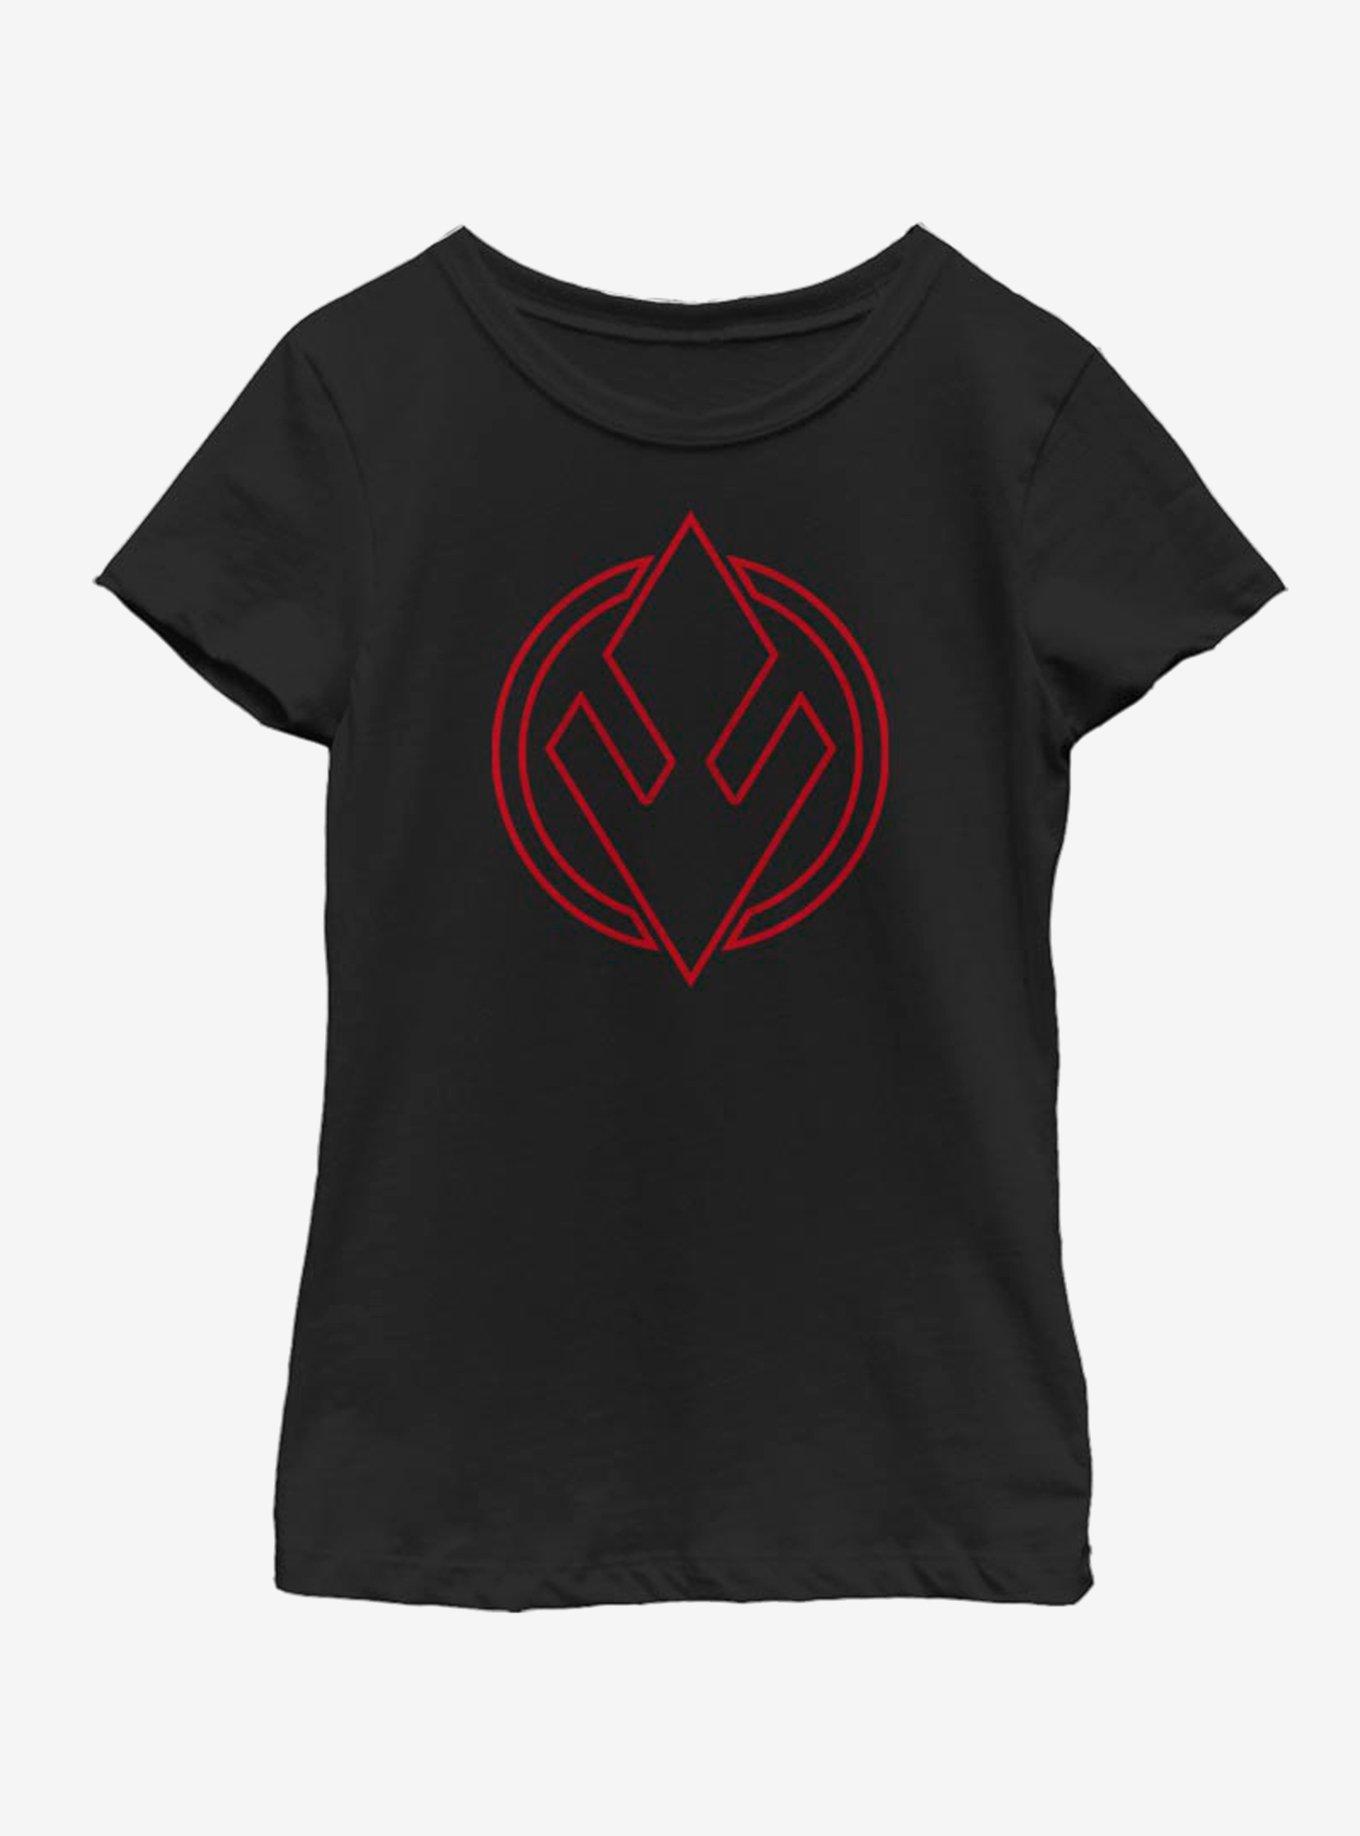 Star Wars The Rise Of Skywalker Sith Trooper Emblem Youth Girls T-Shirt, BLACK, hi-res